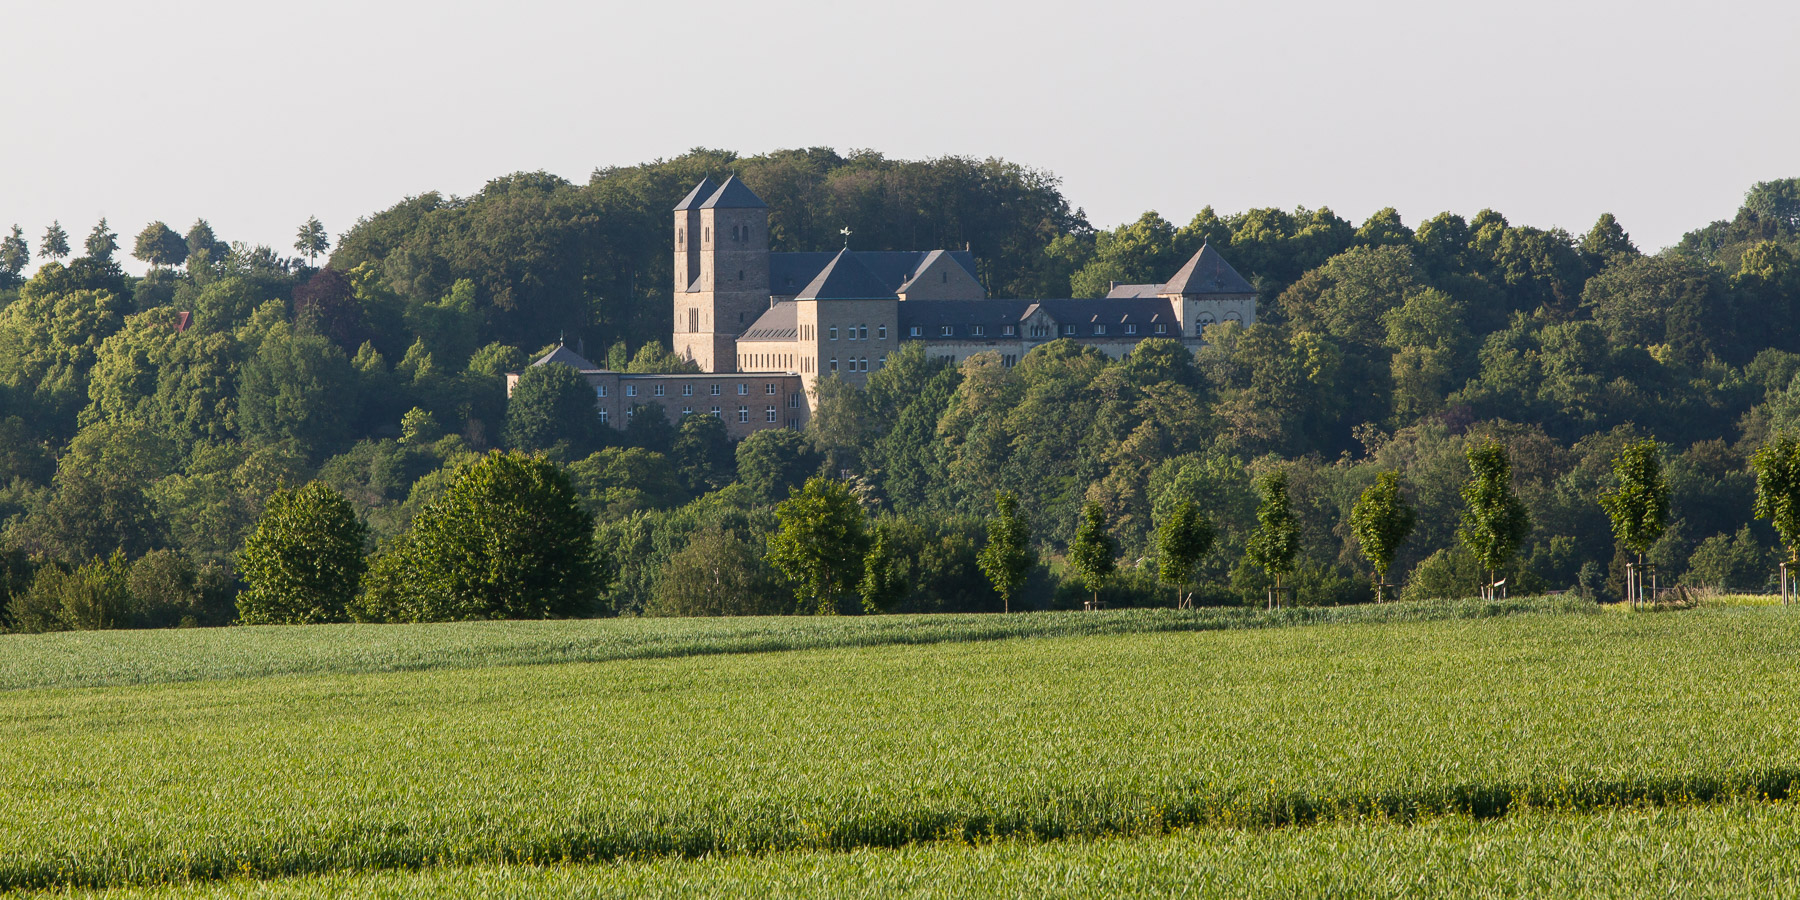 Spaziert man durch die umliegenden Felder, bieten sich immer wieder schöne Aussichten auf die Abtei.